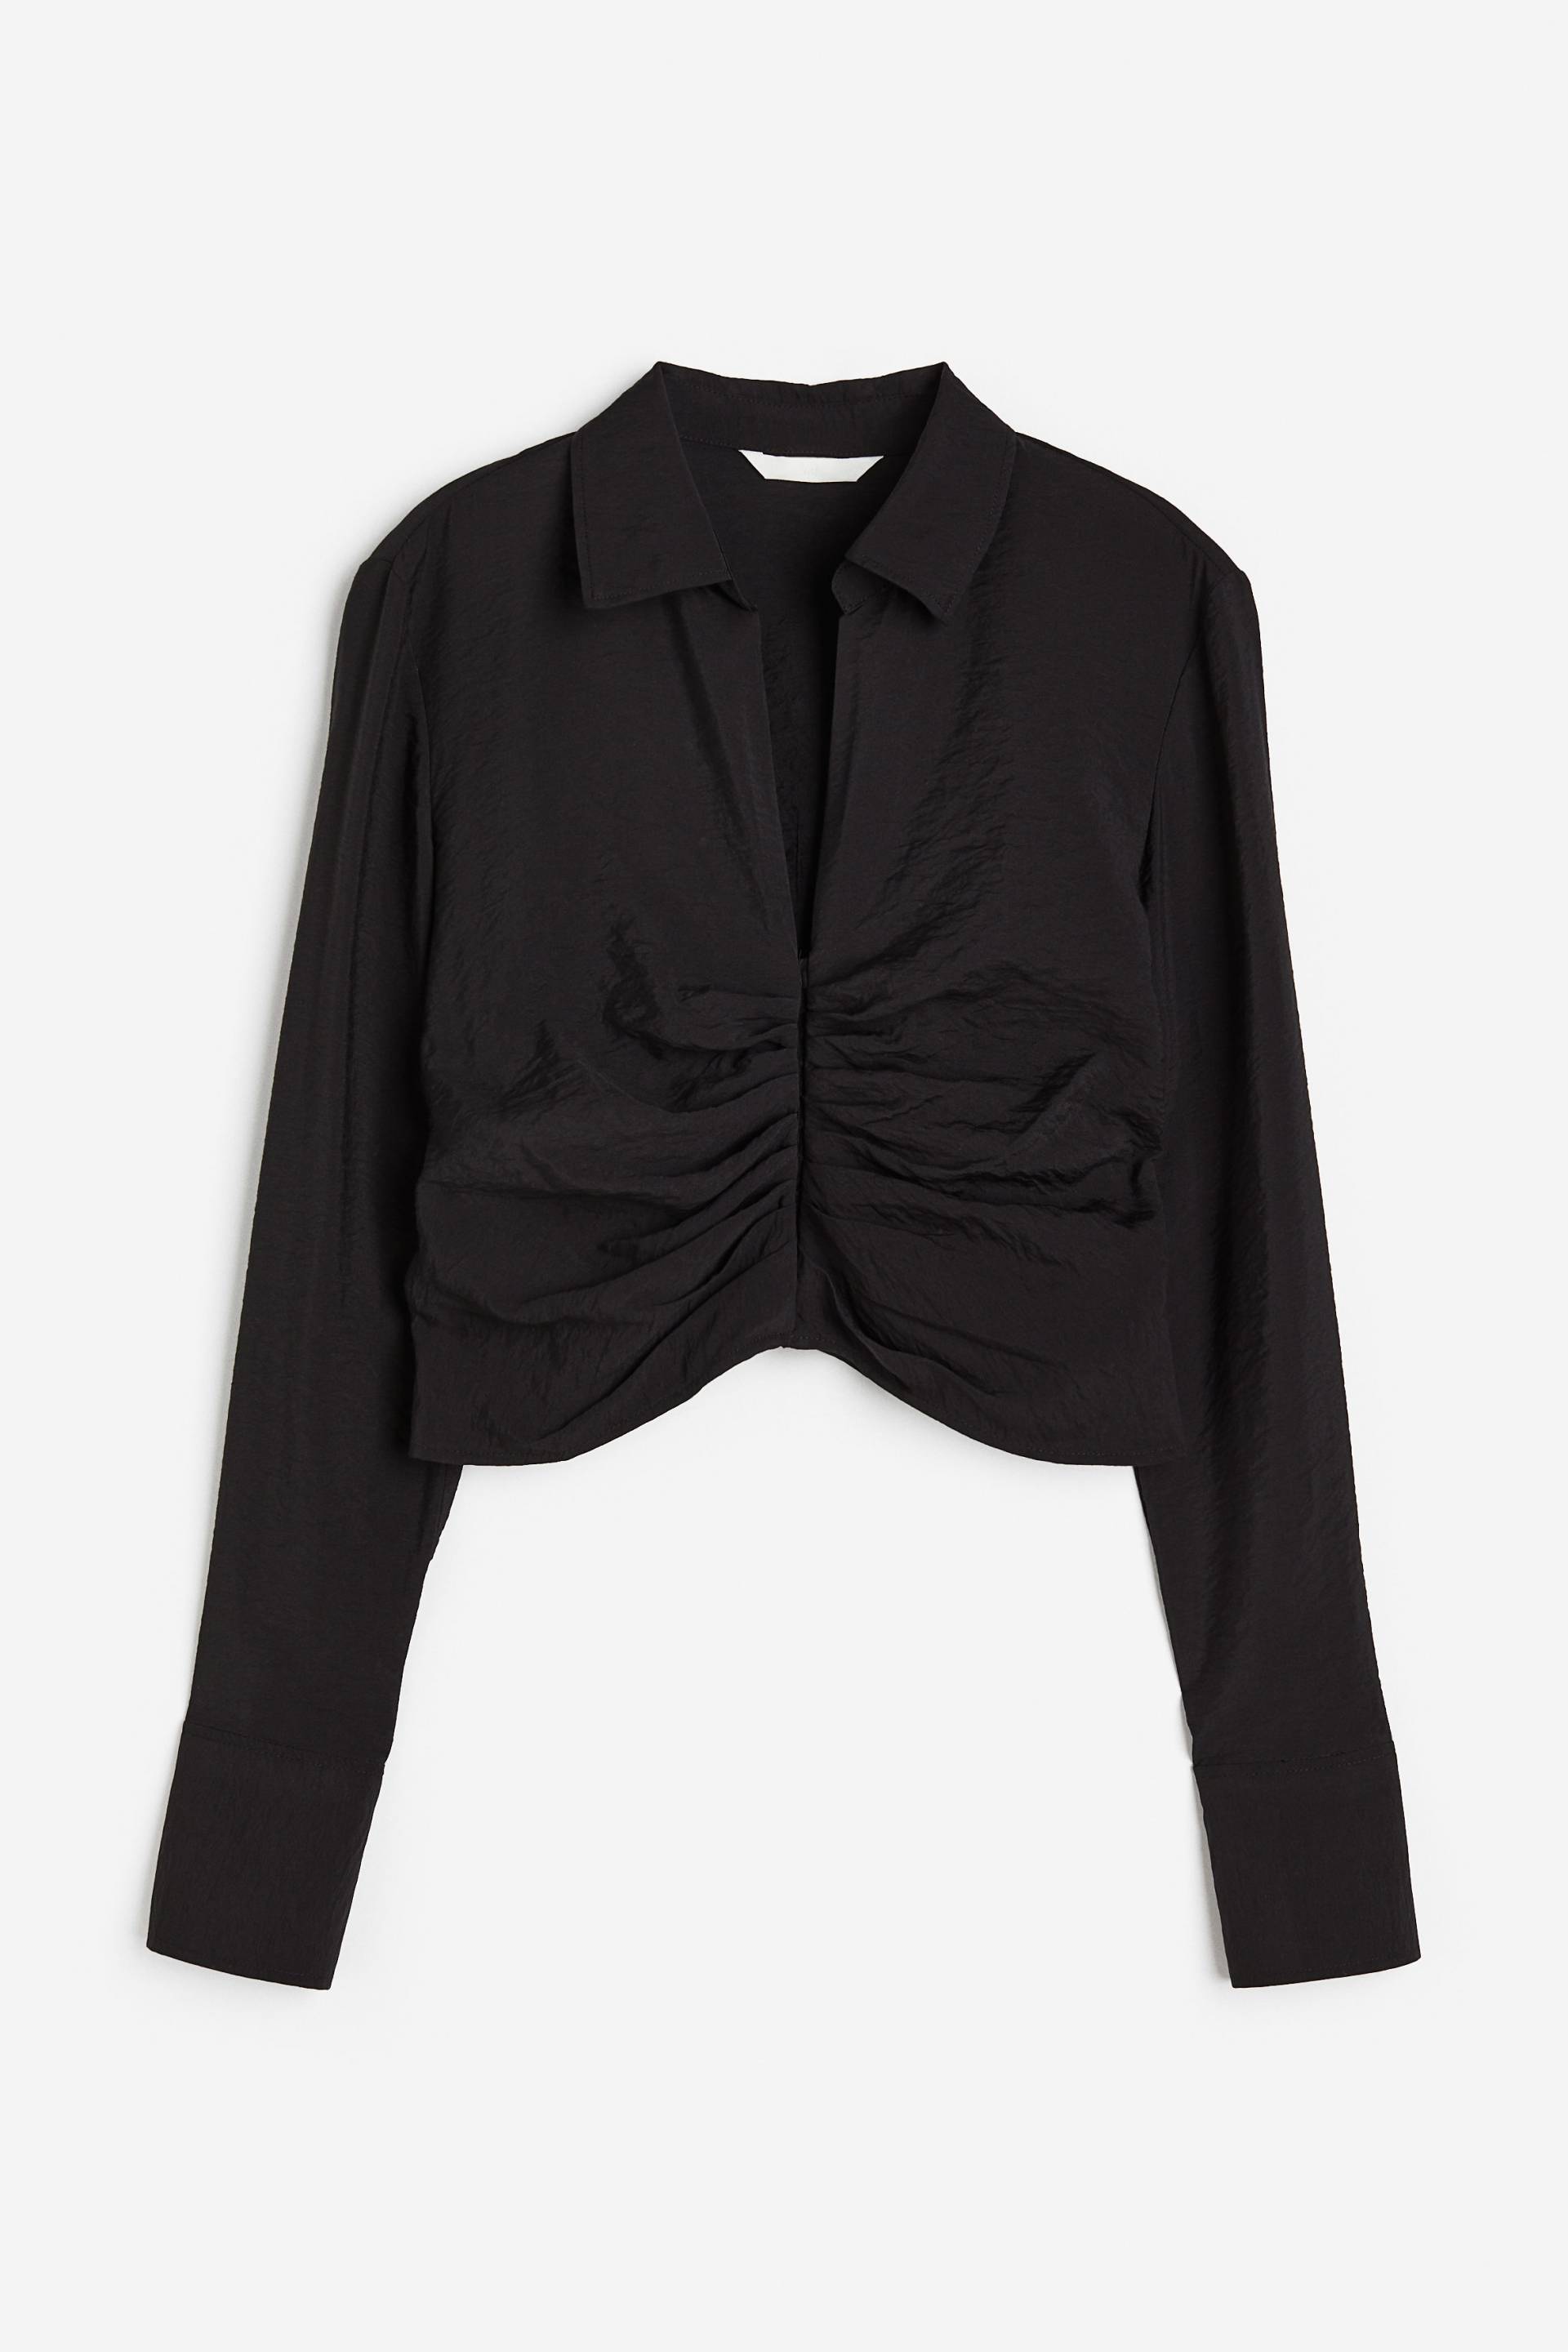 H&M Bluse mit Kragen Schwarz, Blusen in Größe XS. Farbe: Black von H&M